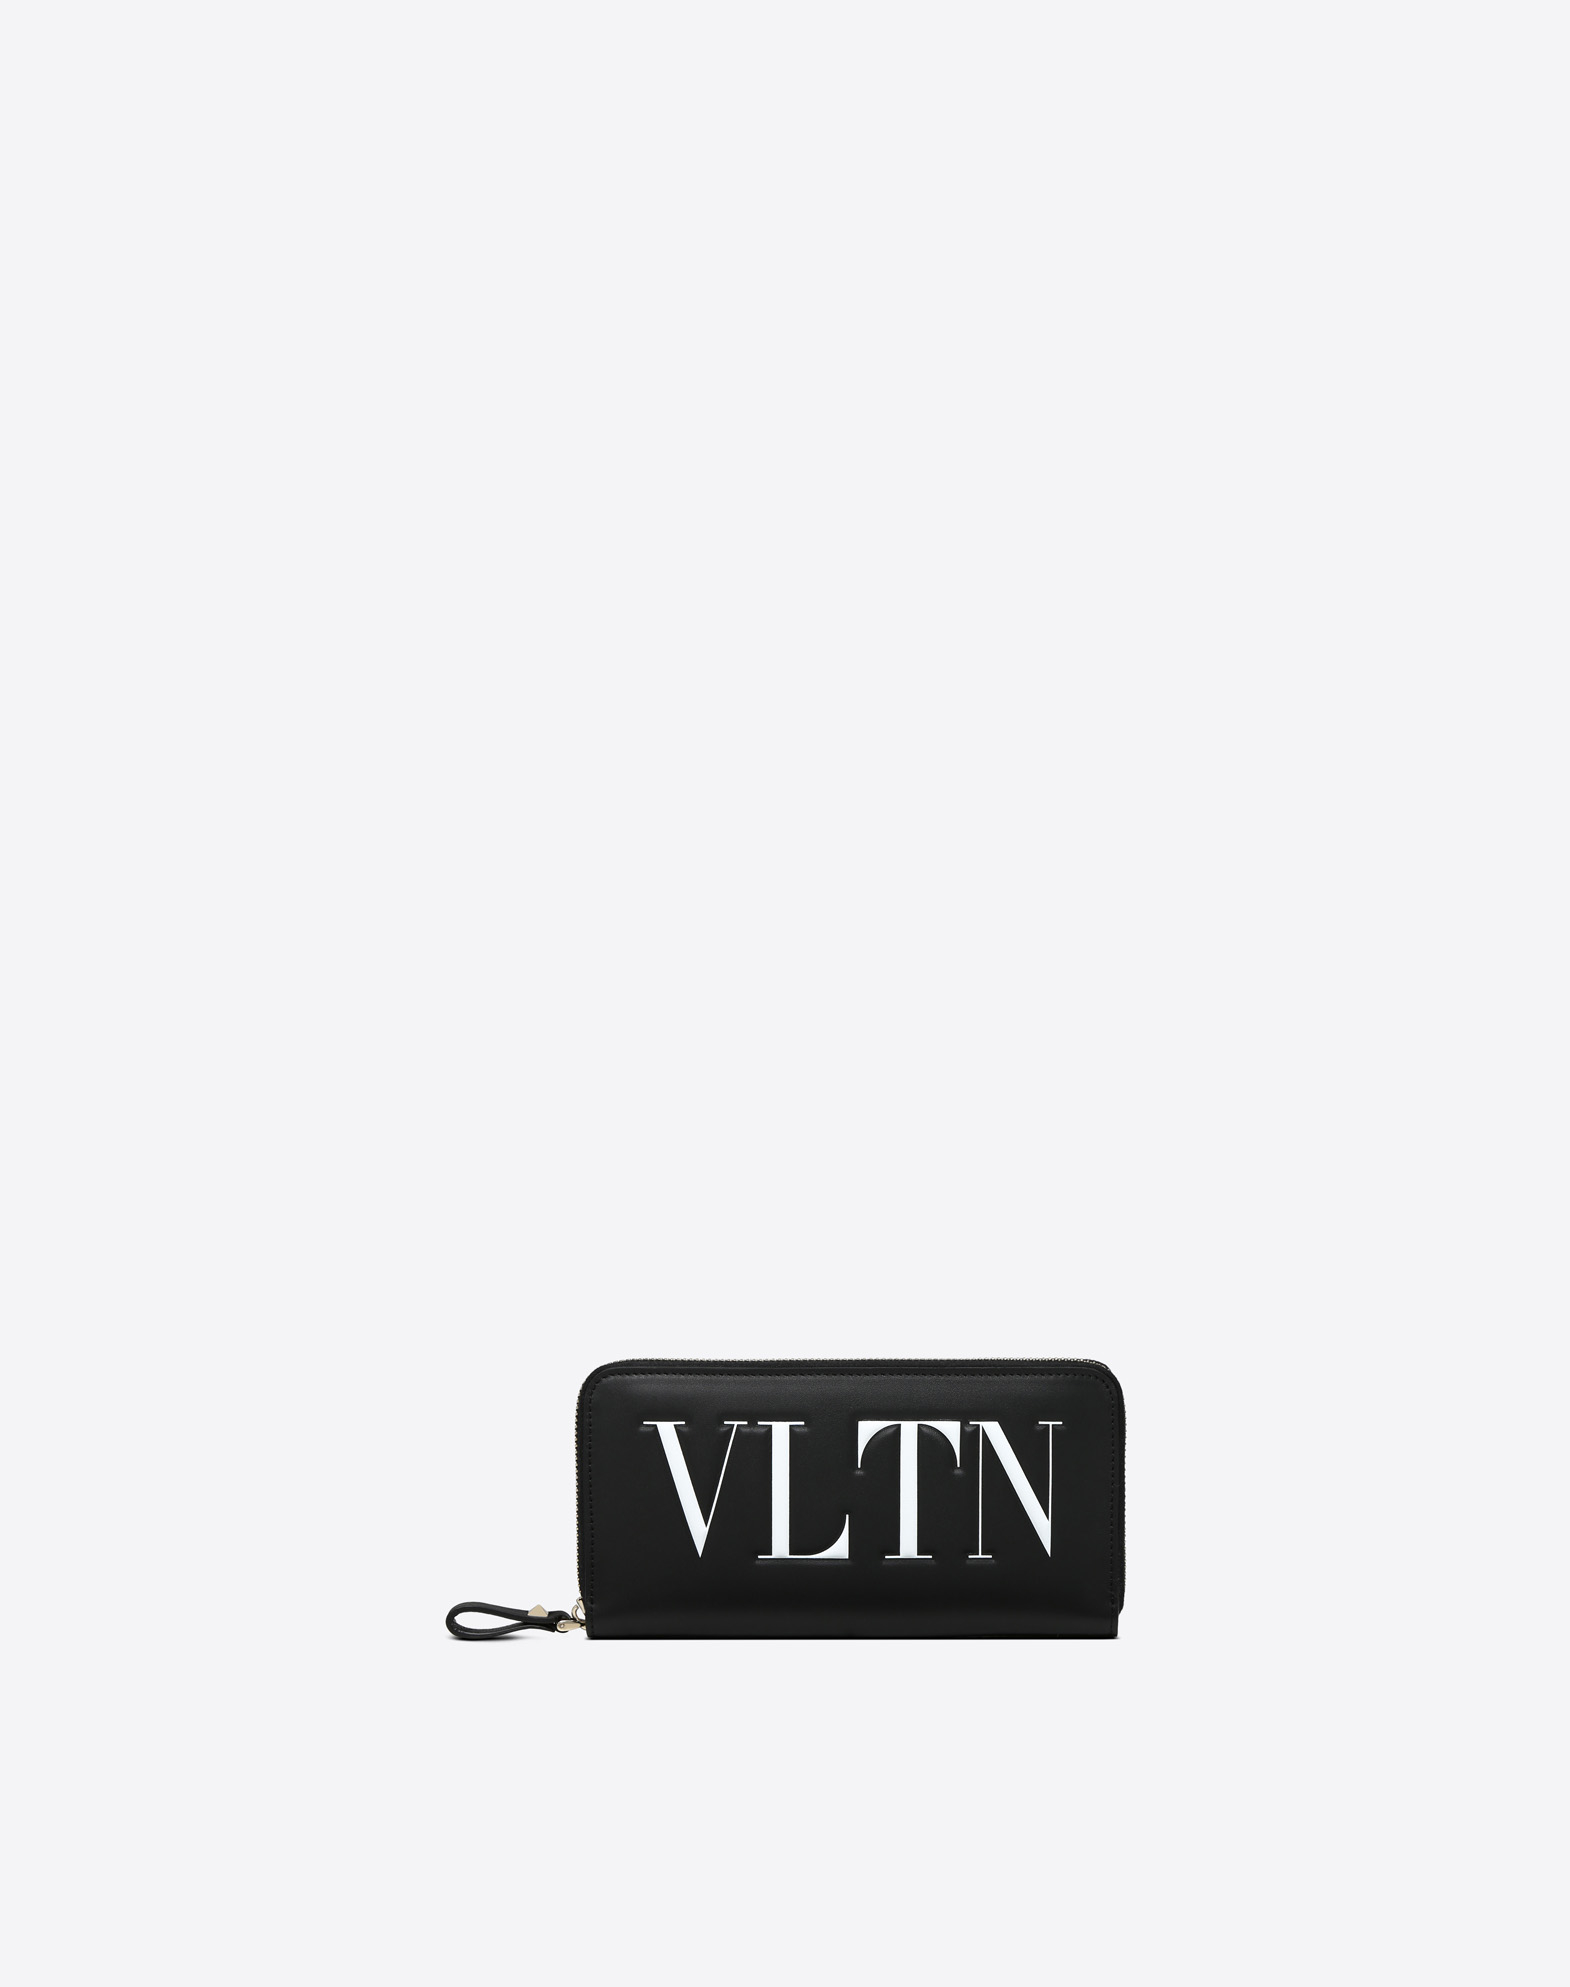 VALENTINO（ヴァレンチノ）VLTNシリーズ